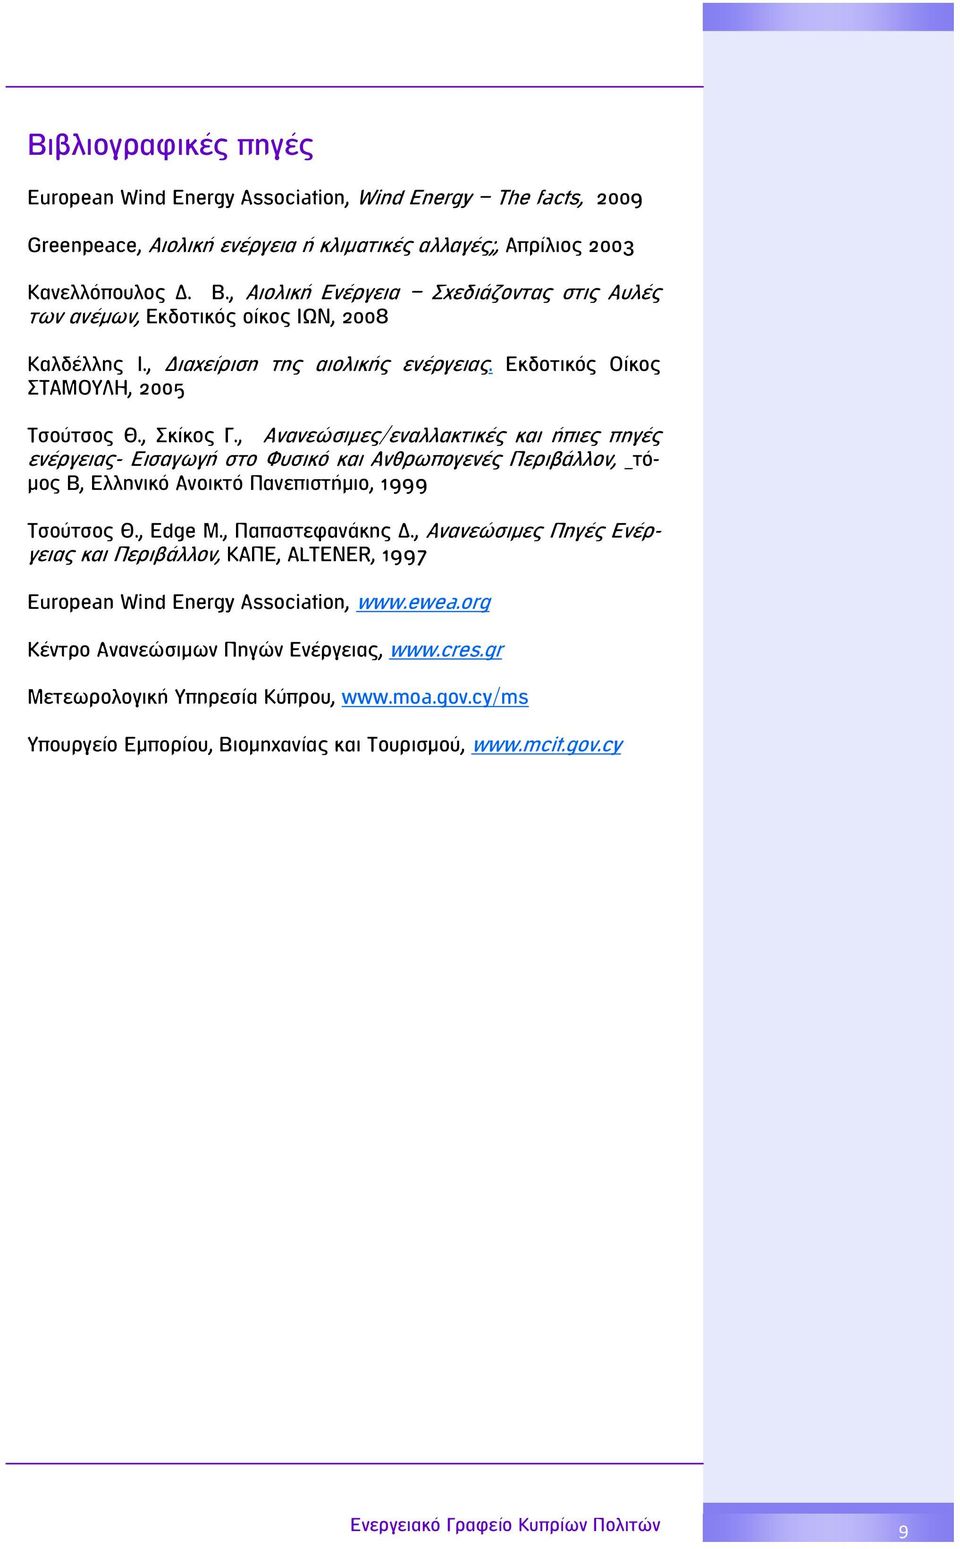 , Ανανεώσιμες/εναλλακτικές και ήπιες πηγές ενέργειας- Εισαγωγή στο Φυσικό και Ανθρωπογενές Περιβάλλον, τόμος Β, Ελληνικό Ανοικτό Πανεπιστήμιο, 1999 Τσούτσος Θ., Edge Μ., Παπαστεφανάκης Δ.